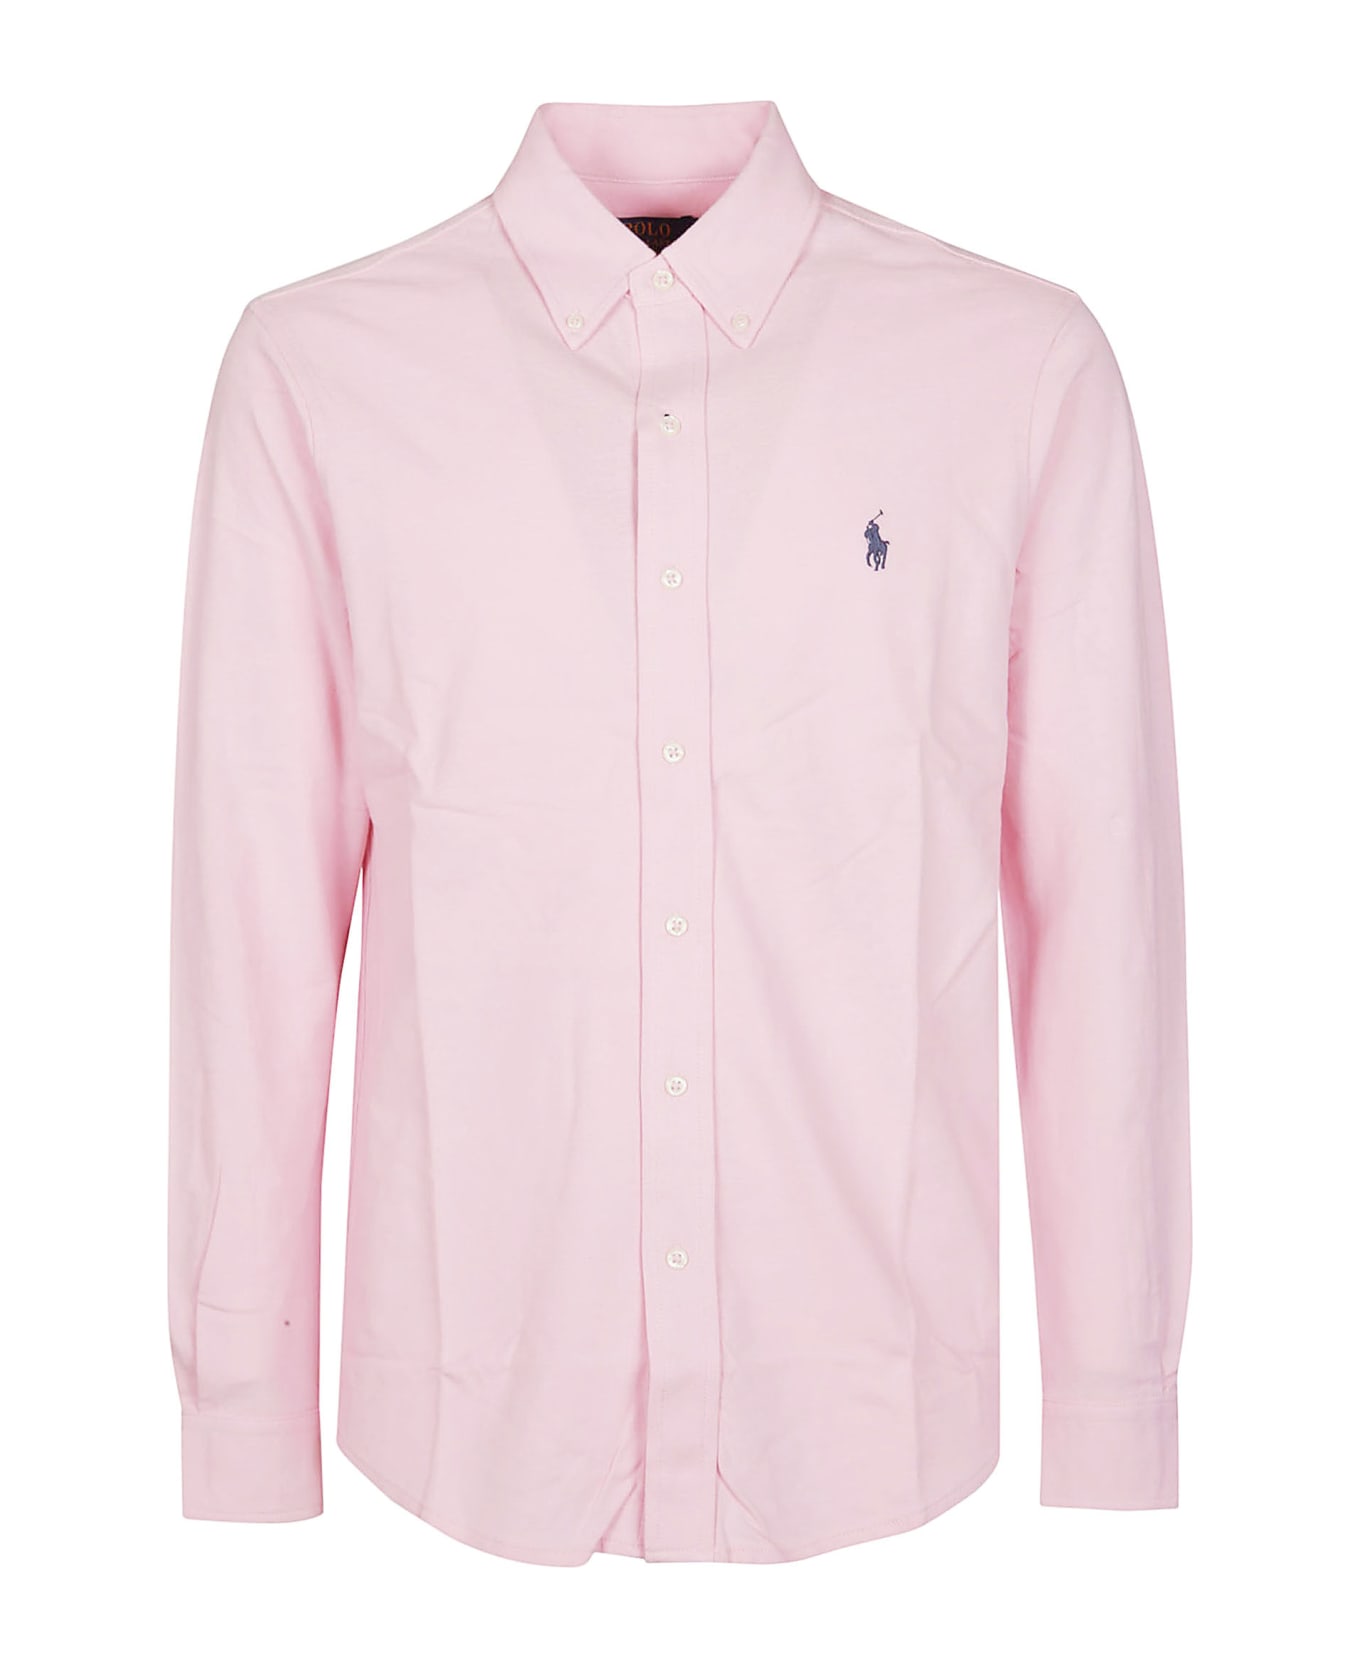 Polo Ralph Lauren Long Sleeve Shirt Polo Ralph Lauren - PINK シャツ